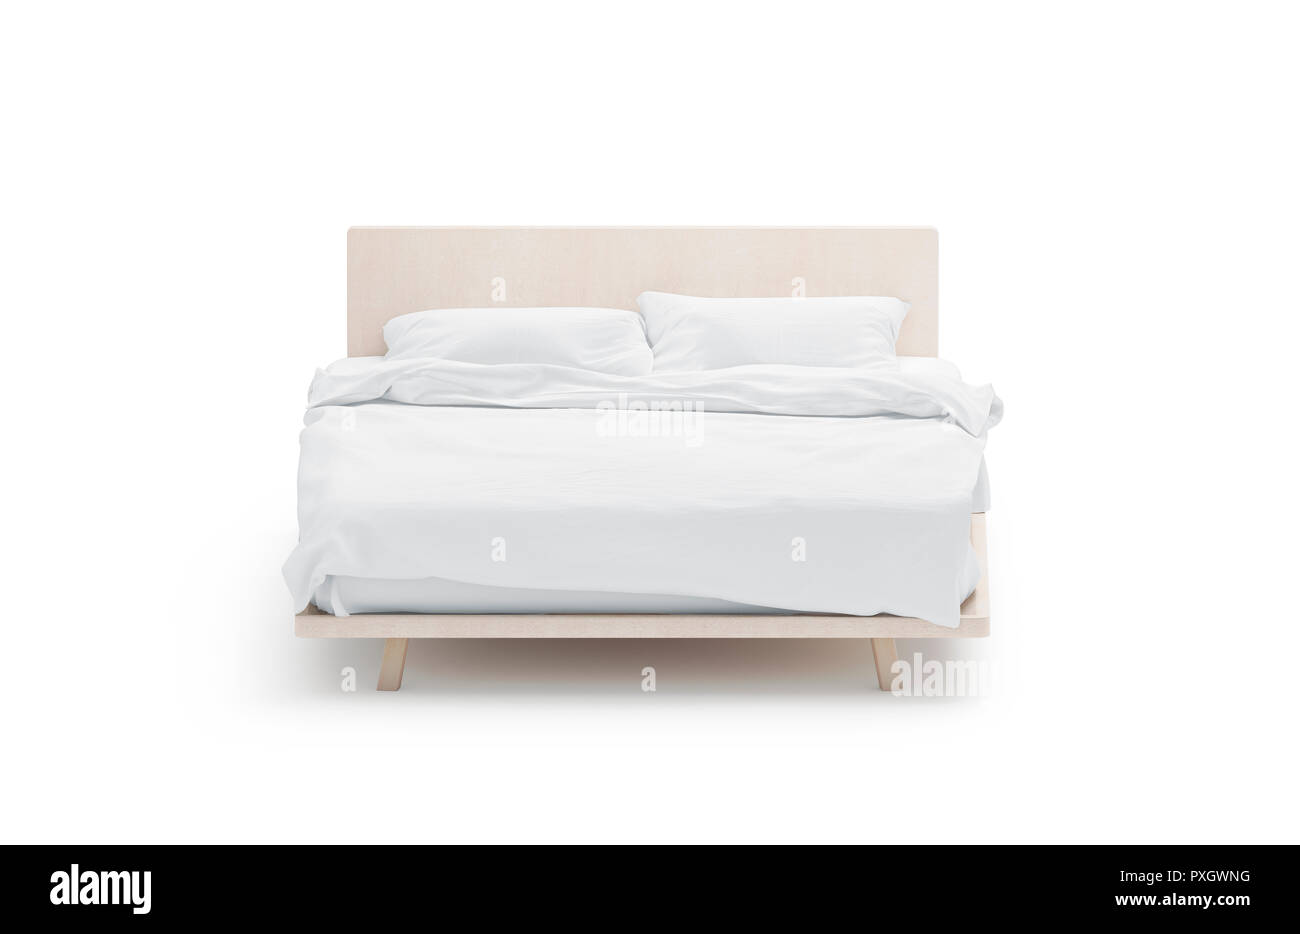 Maqueta de cama blanco, vista frontal, aislados, 3D rendering. Vacío catre metido con almohadas y mantas de maquetas. Ropa de cama clara plantilla. Lugar para dormir con colchón, edredón y pilow. Foto de stock